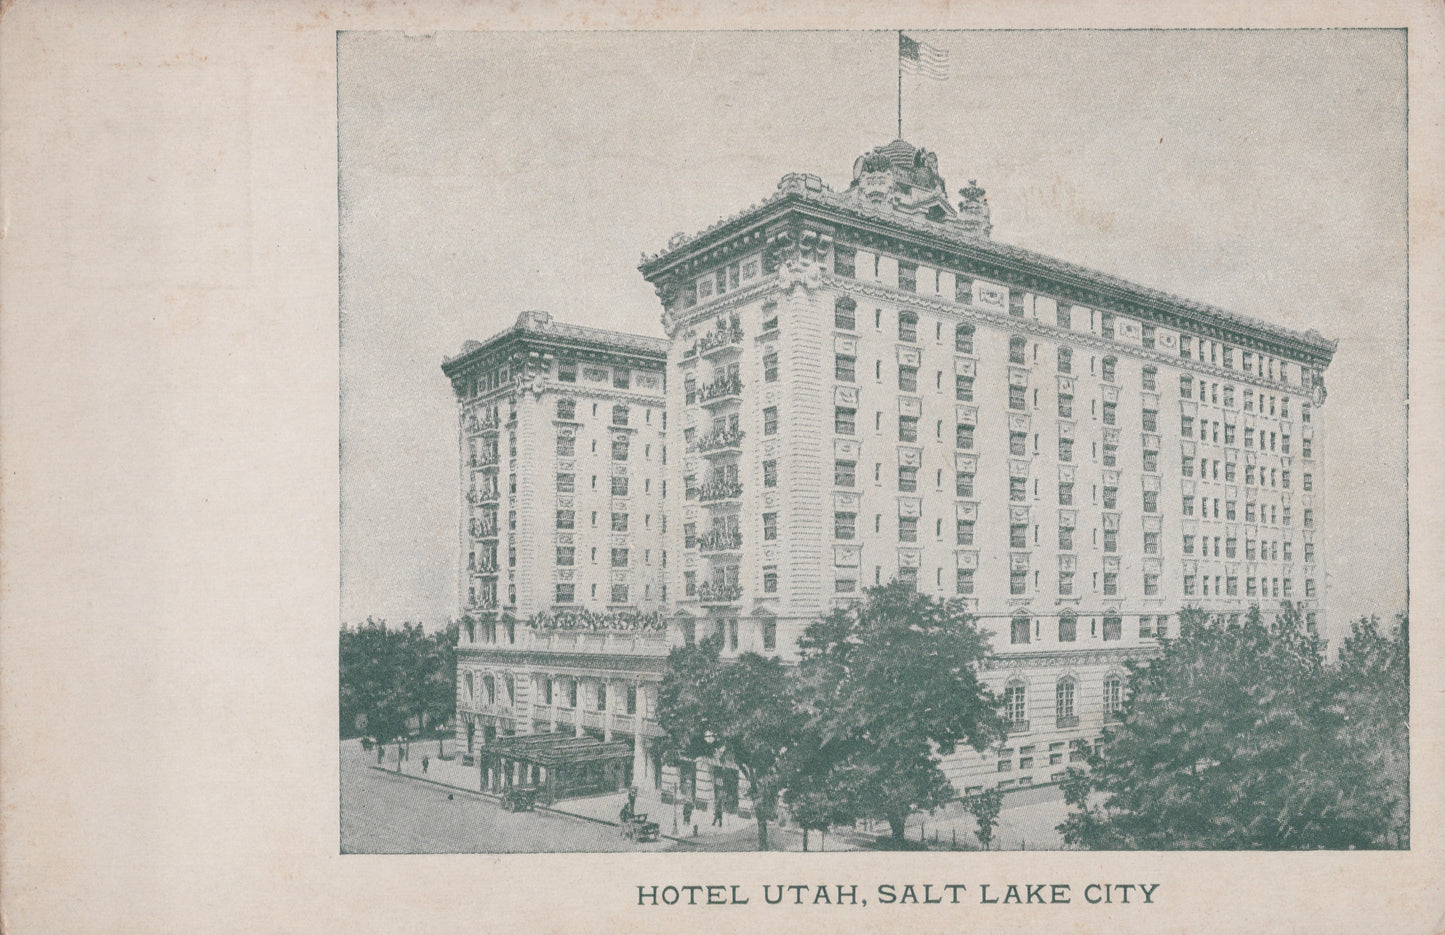 Hotel Utah, Salt Lake City